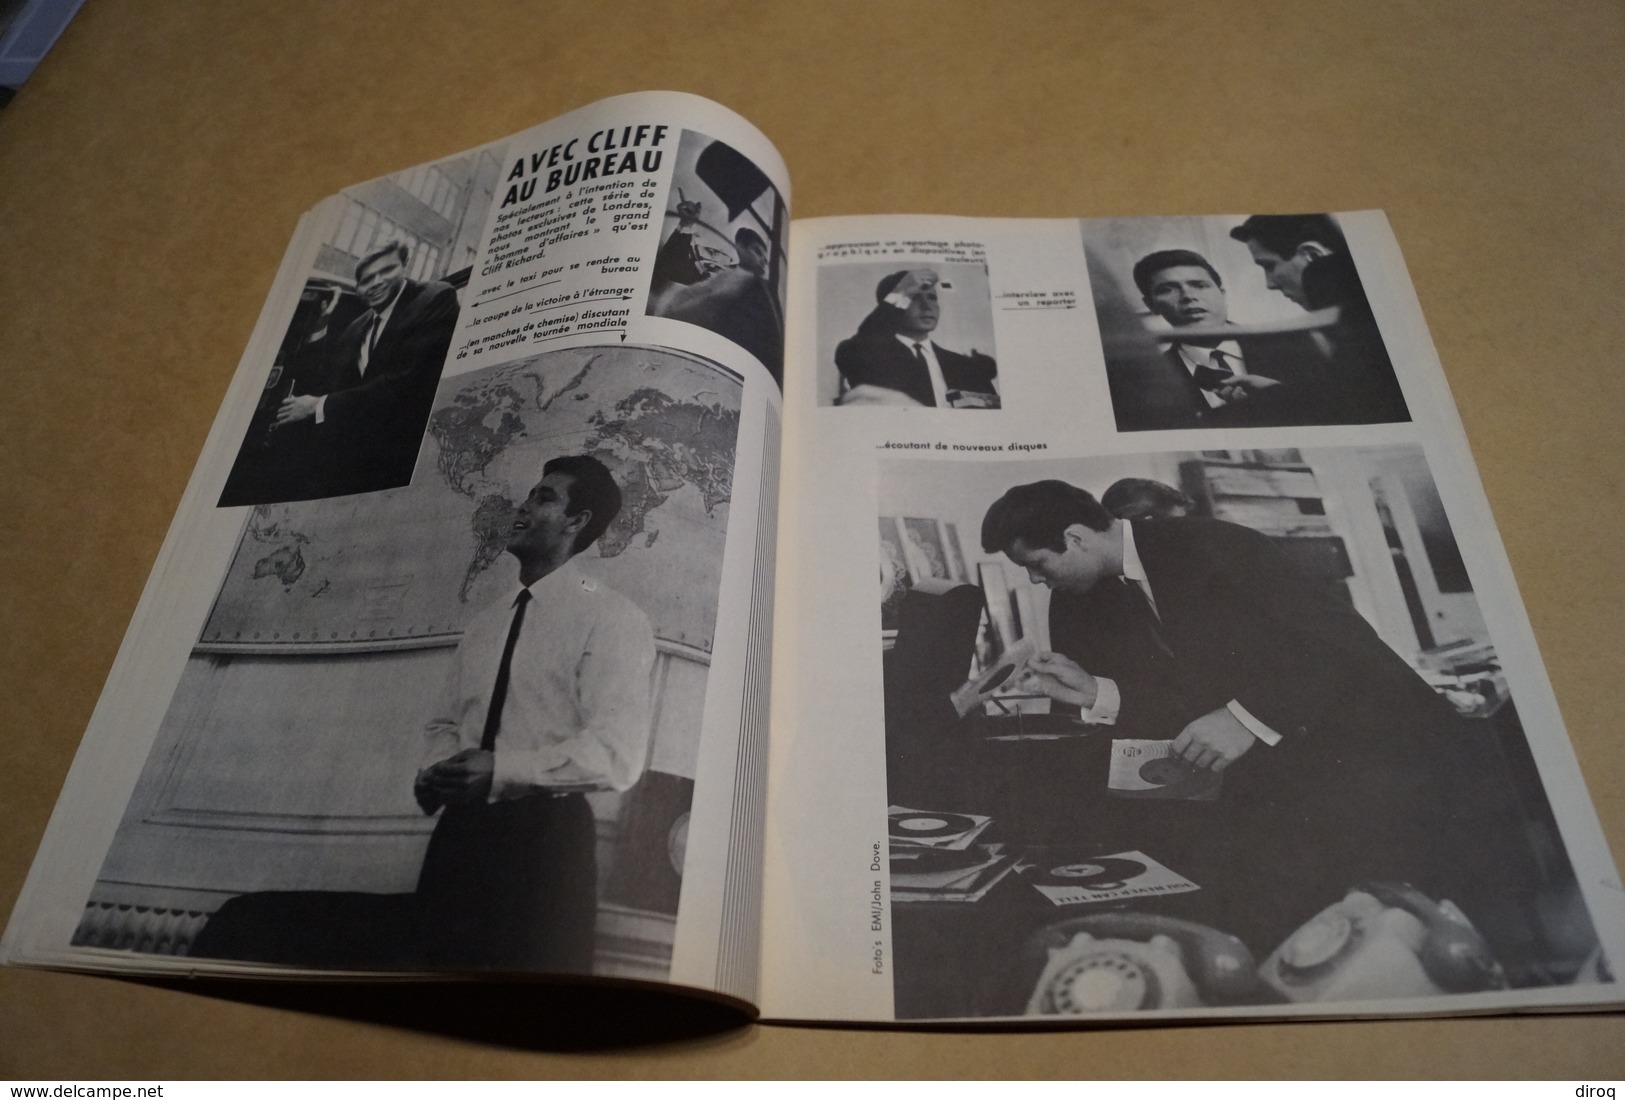 Juke-Box + Calendrier 1965,Spécial N° 100,complet Superbe état,Beatles,etc....vintage - Musique